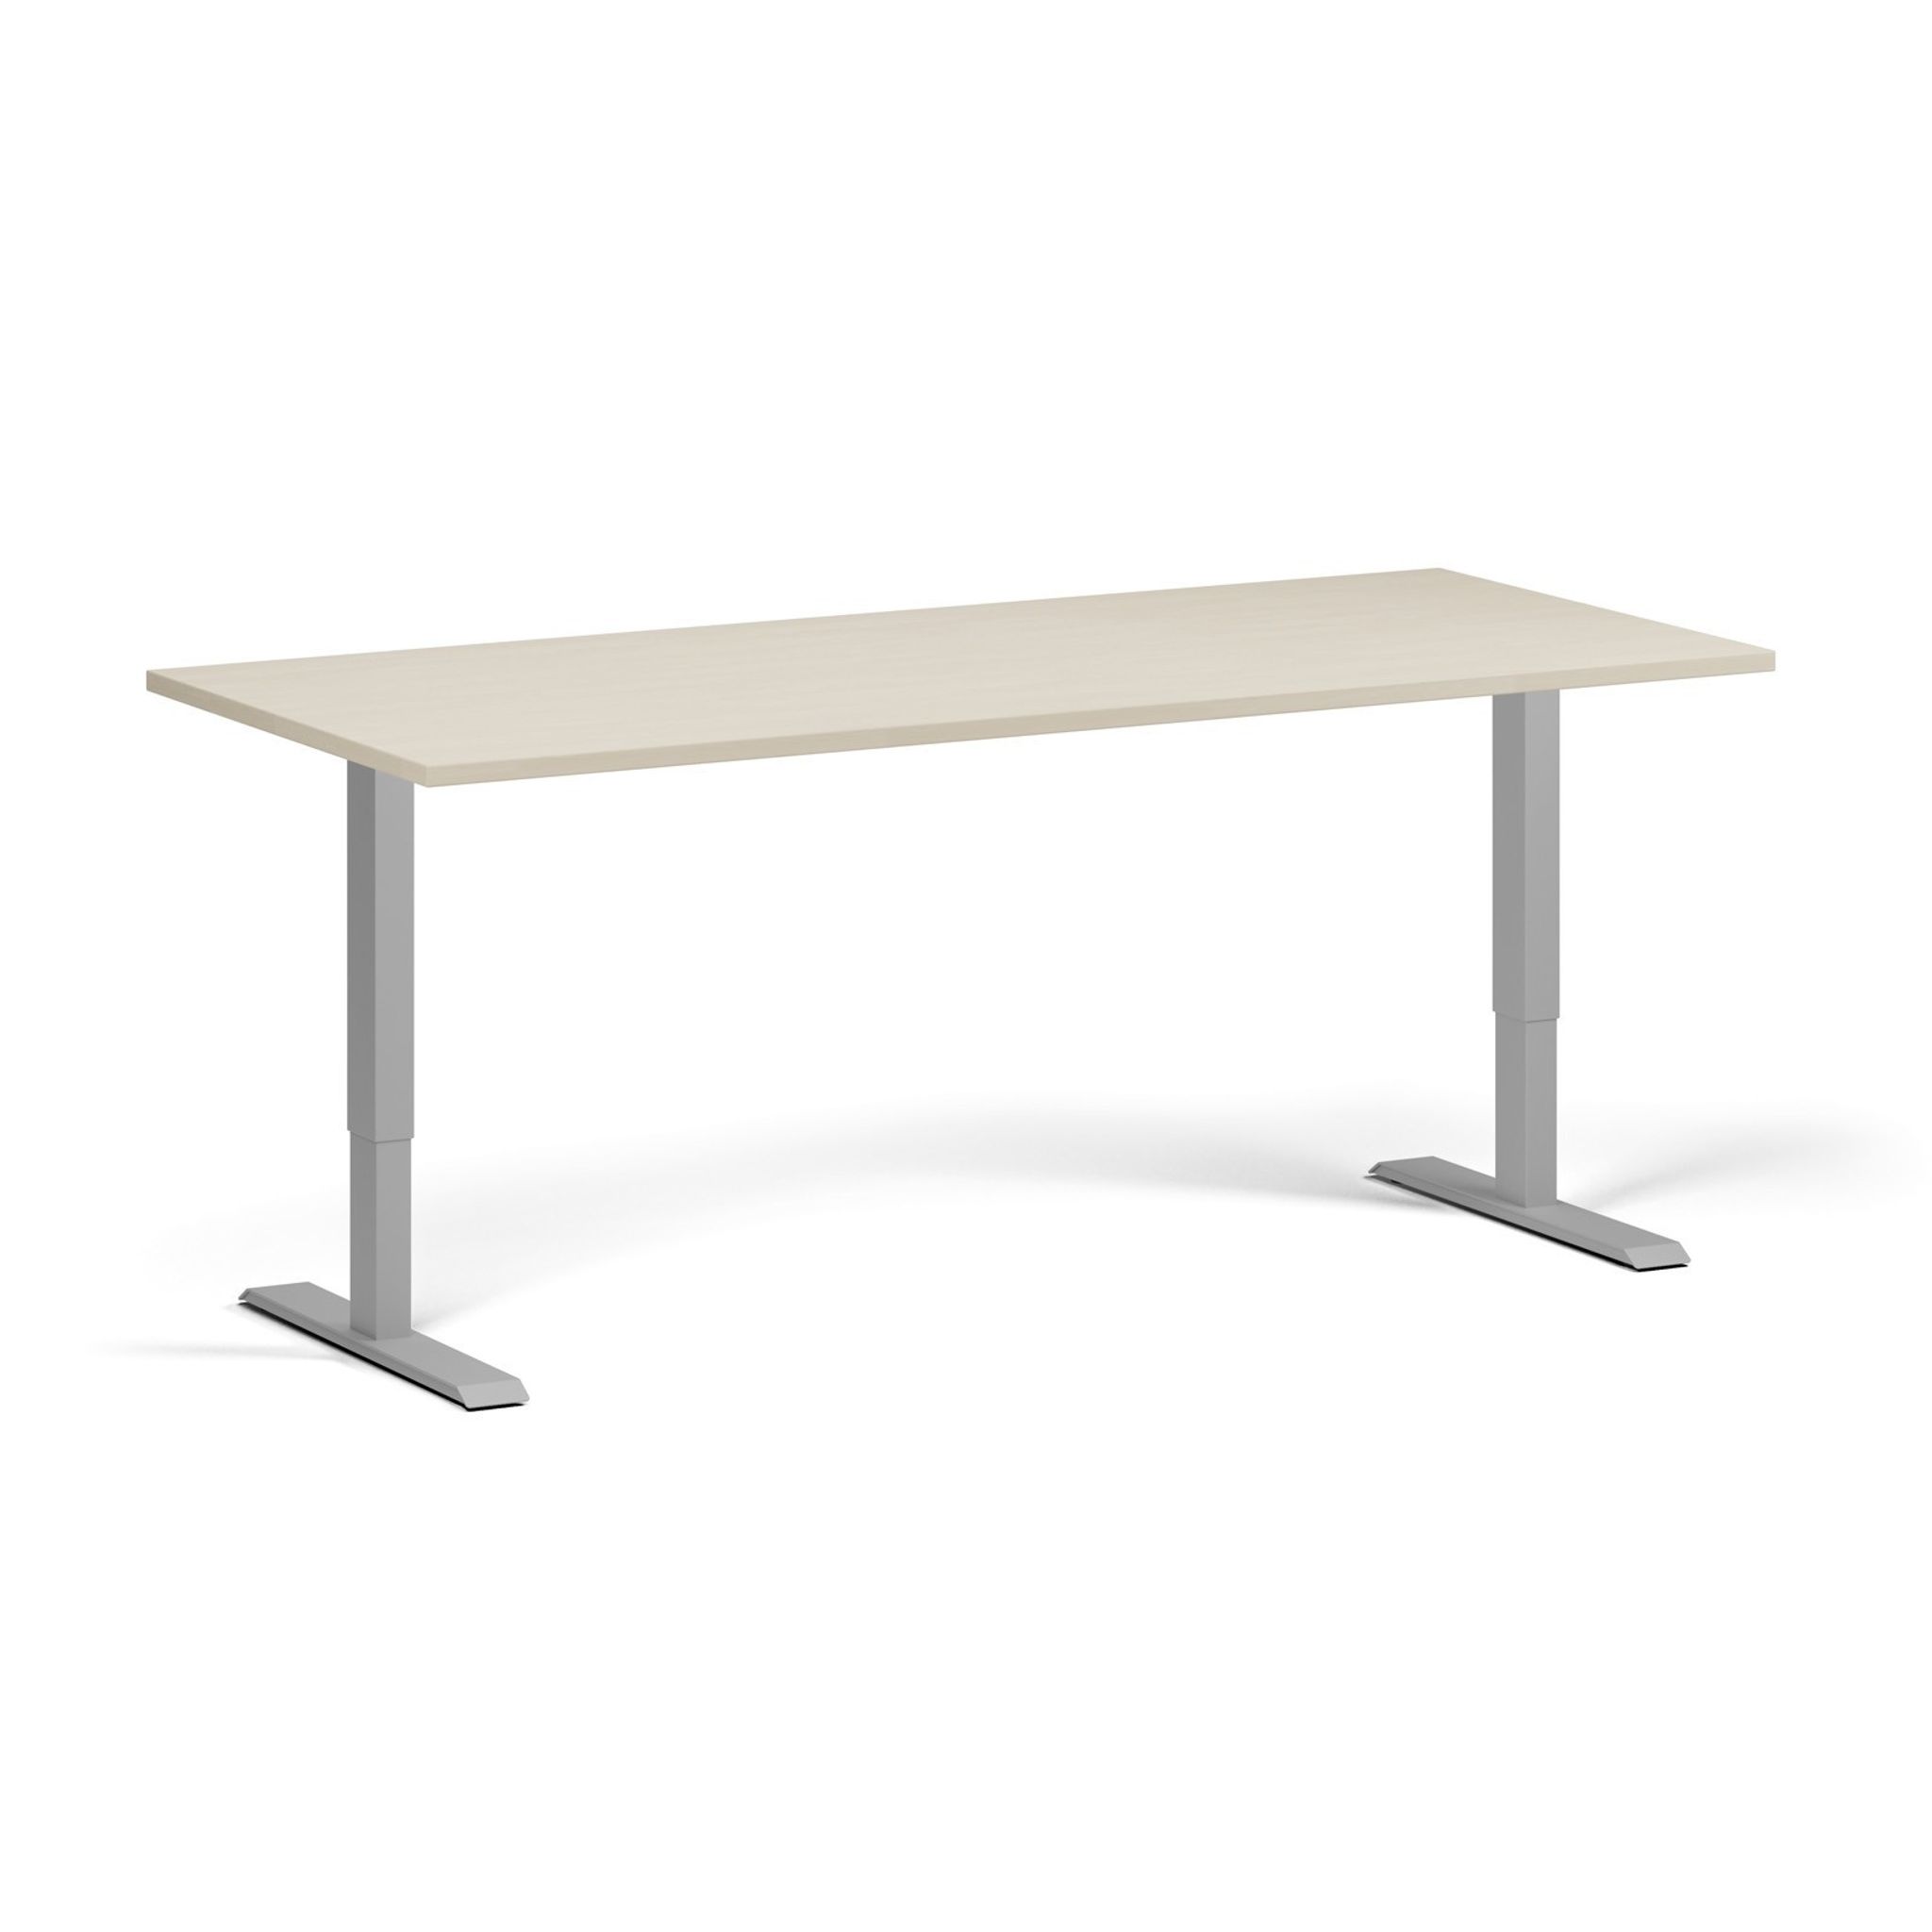 Výškově nastavitelný stůl, 1 motor, 745 - 1235 mm, deska 1800 x 800 mm, šedá podnož, bříza